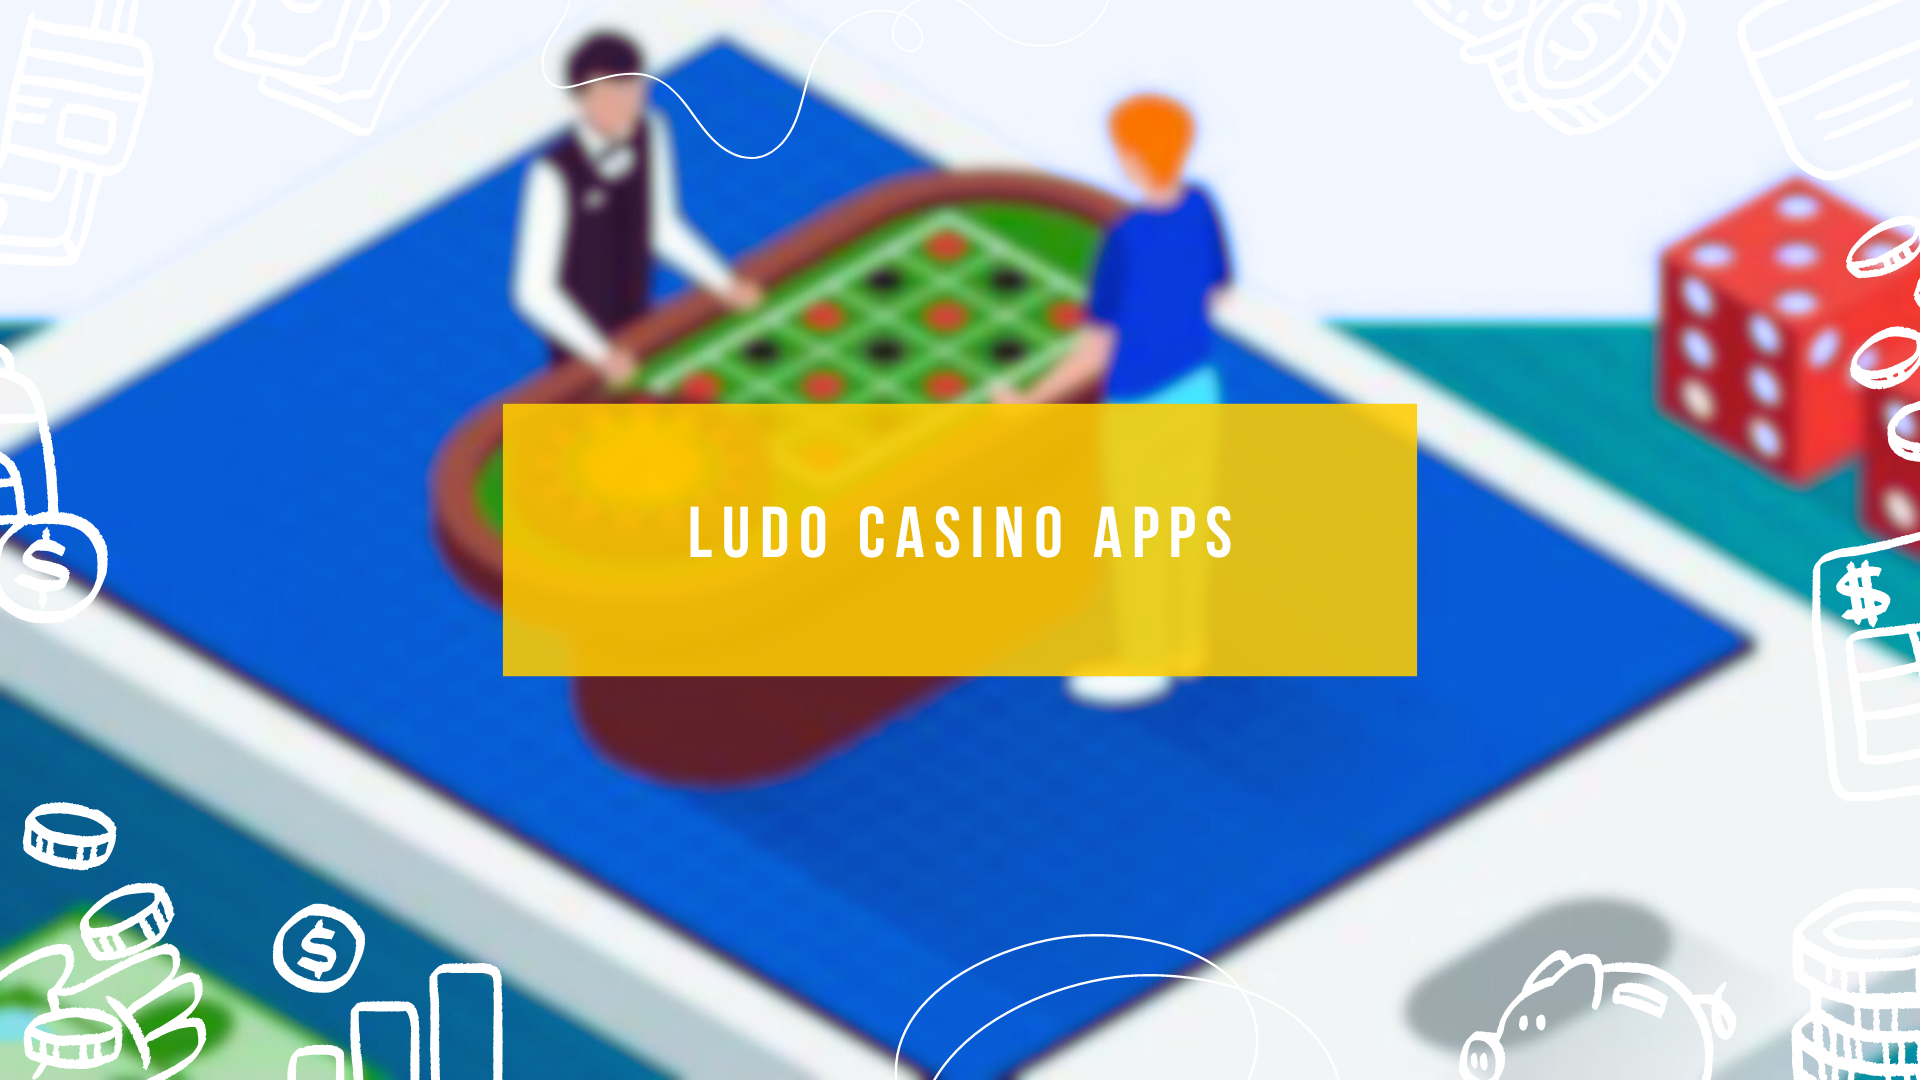 Ludo Casino Apps